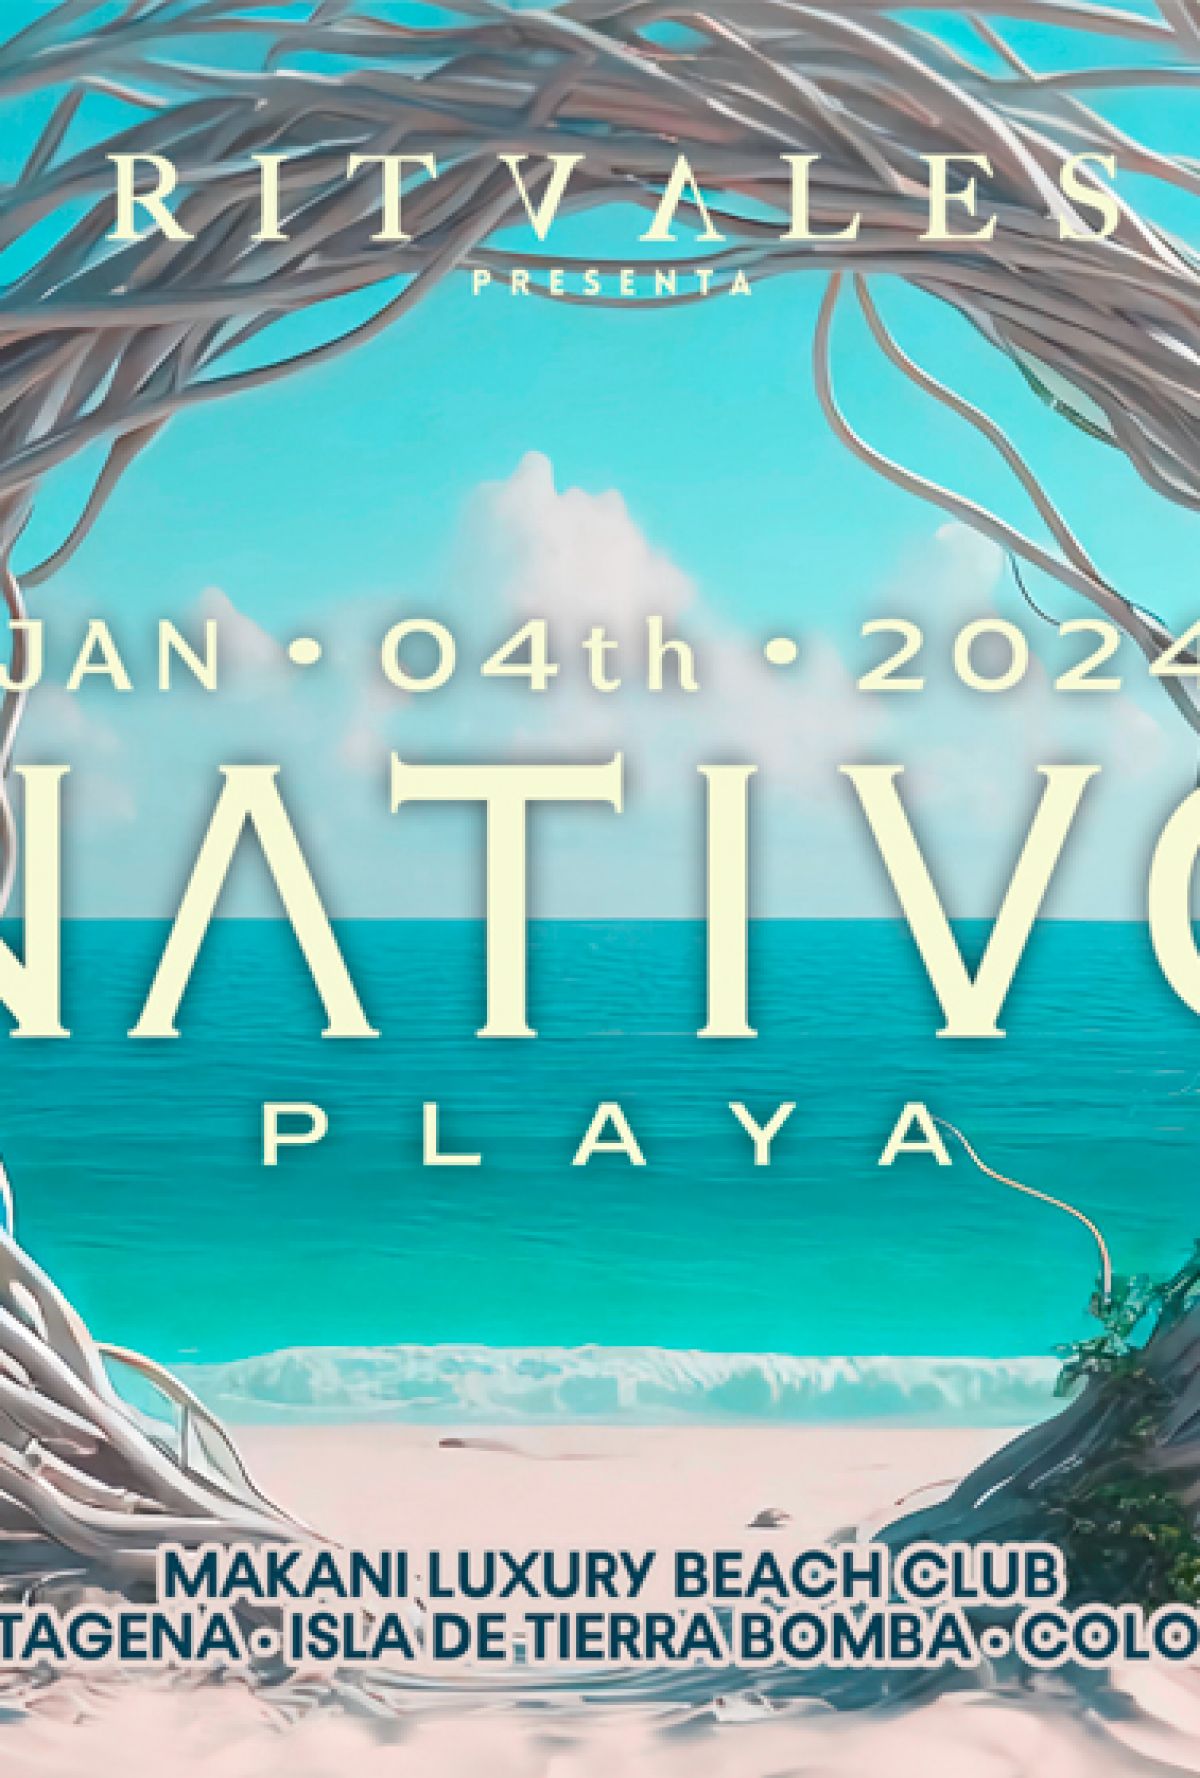 RITVALES presenta NATIVO 2024